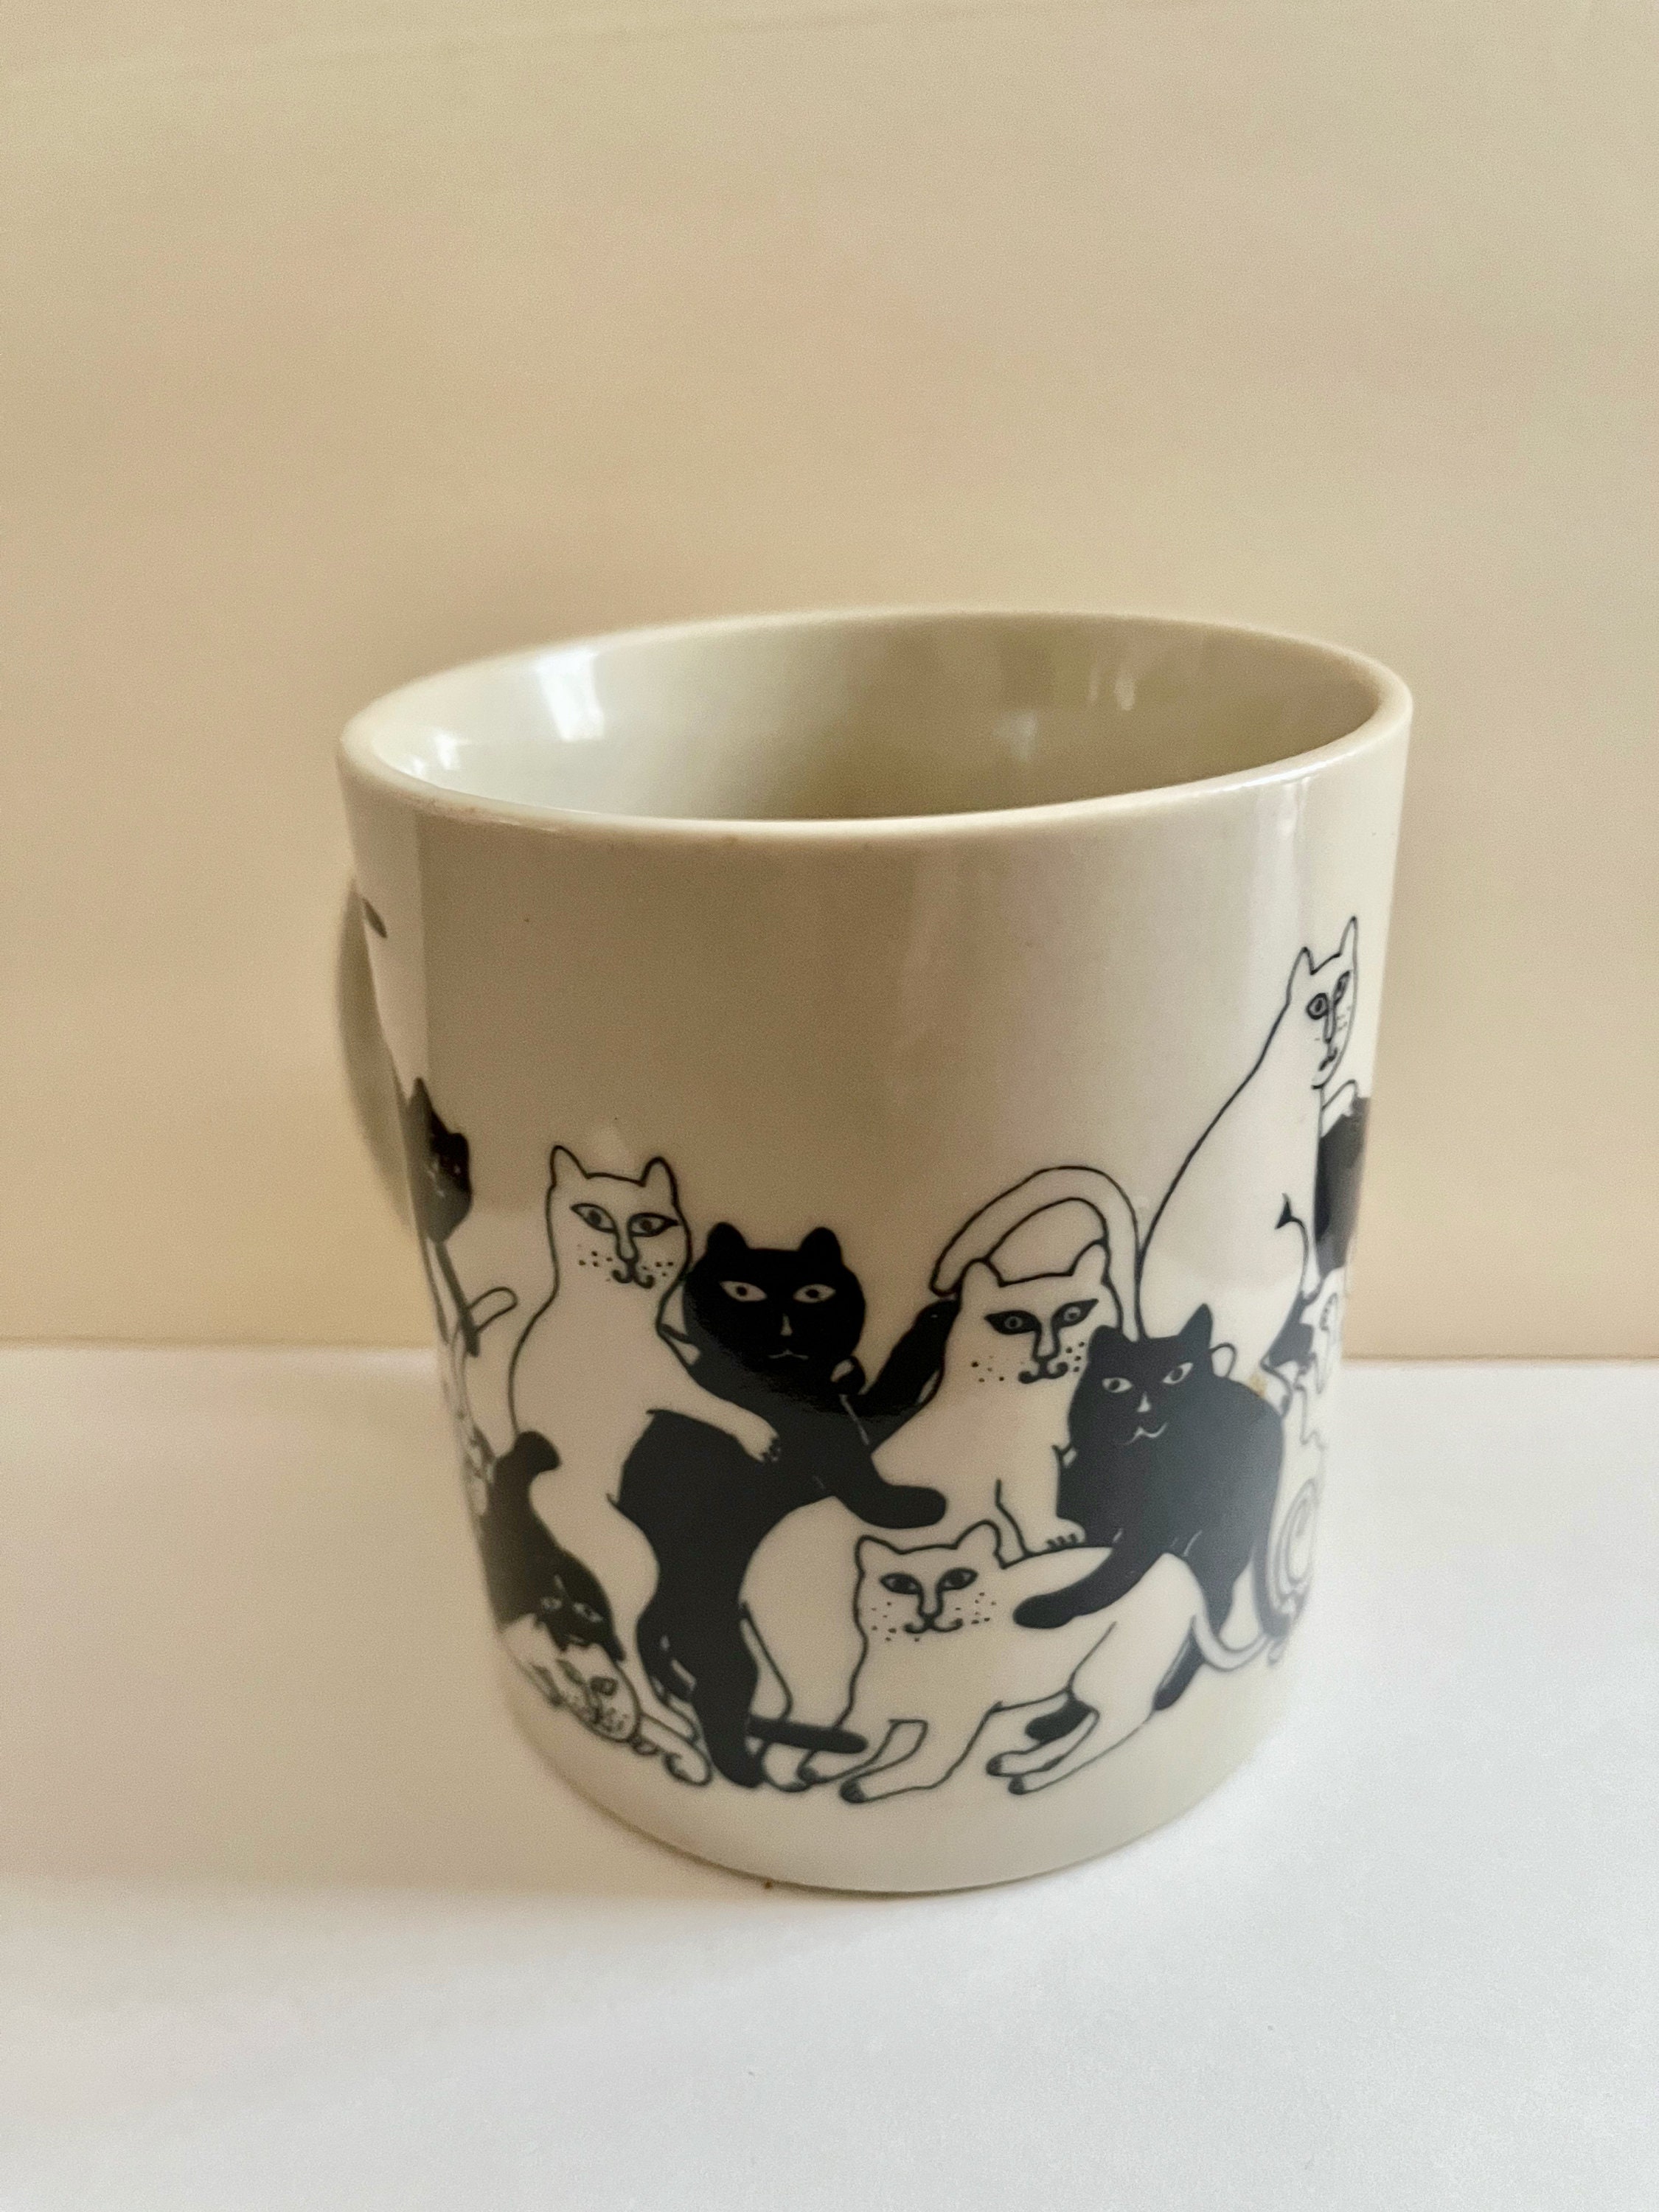 Coffee Mug Yarn Le Chat Cat 1978 '98 San Francisco Taylor Ng Mouse Vintage  Brown